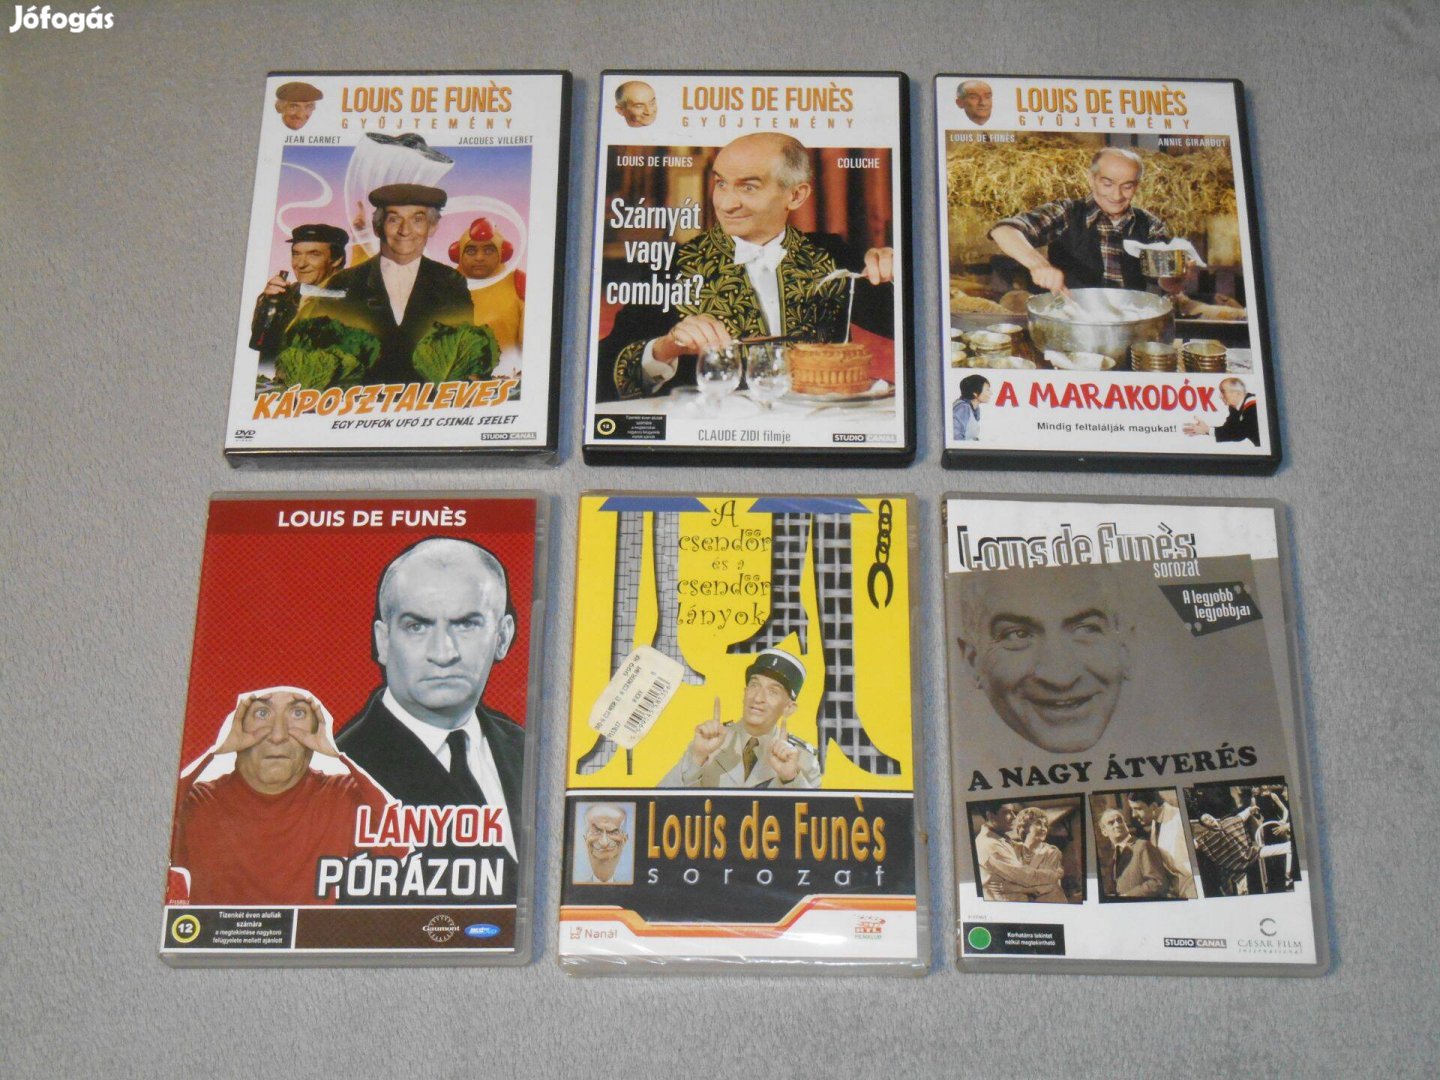 Louis de Funés sorozat 6 DVD film (A csendőr és a csendőr lányok stb.)